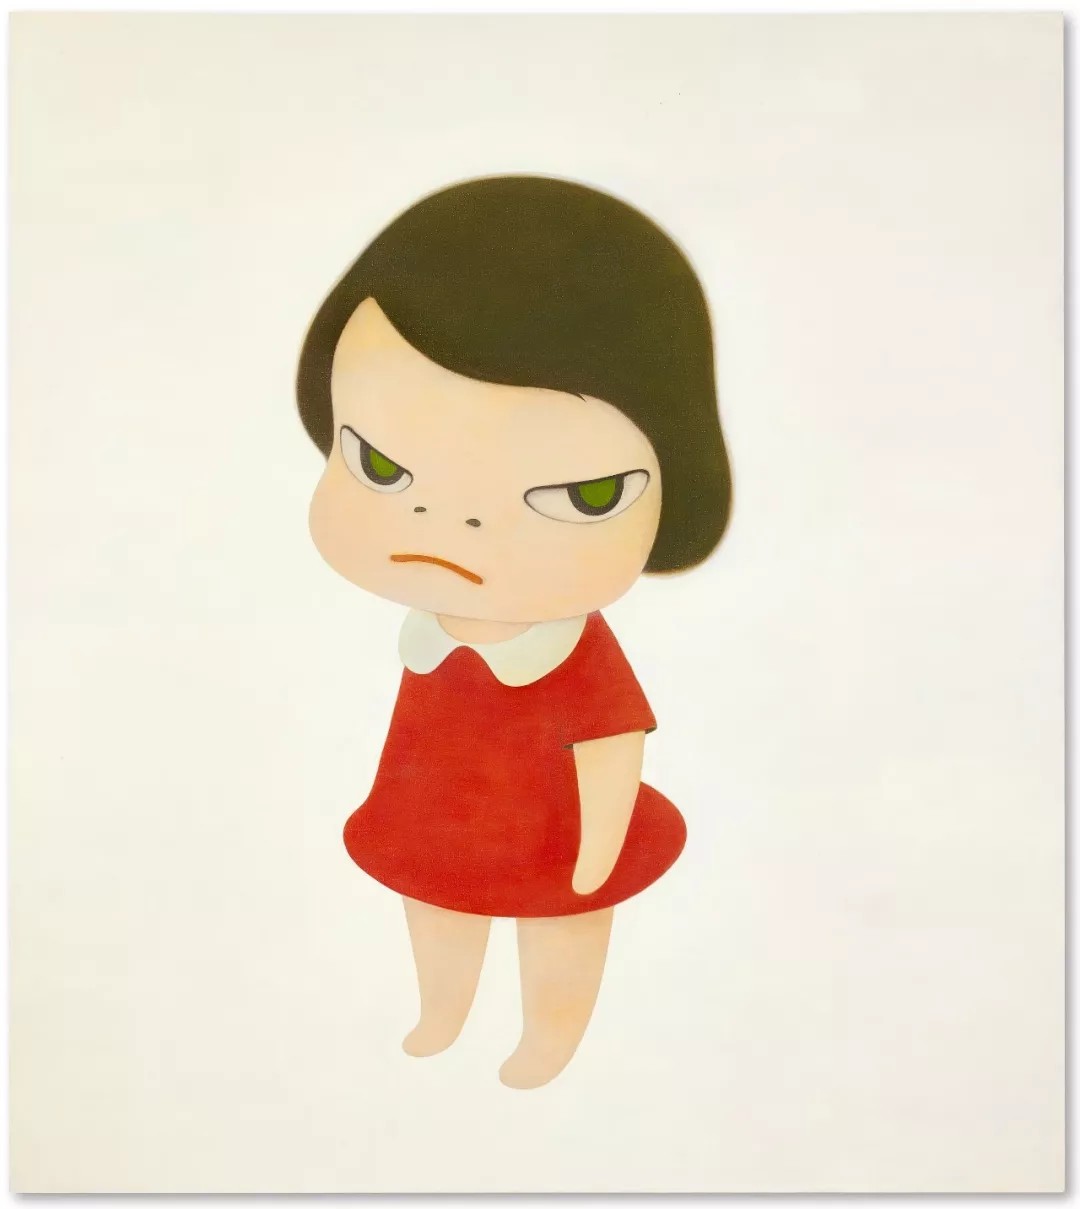 奈良美智，《背后藏刀》，压克力画布，234x208cm，2000年作